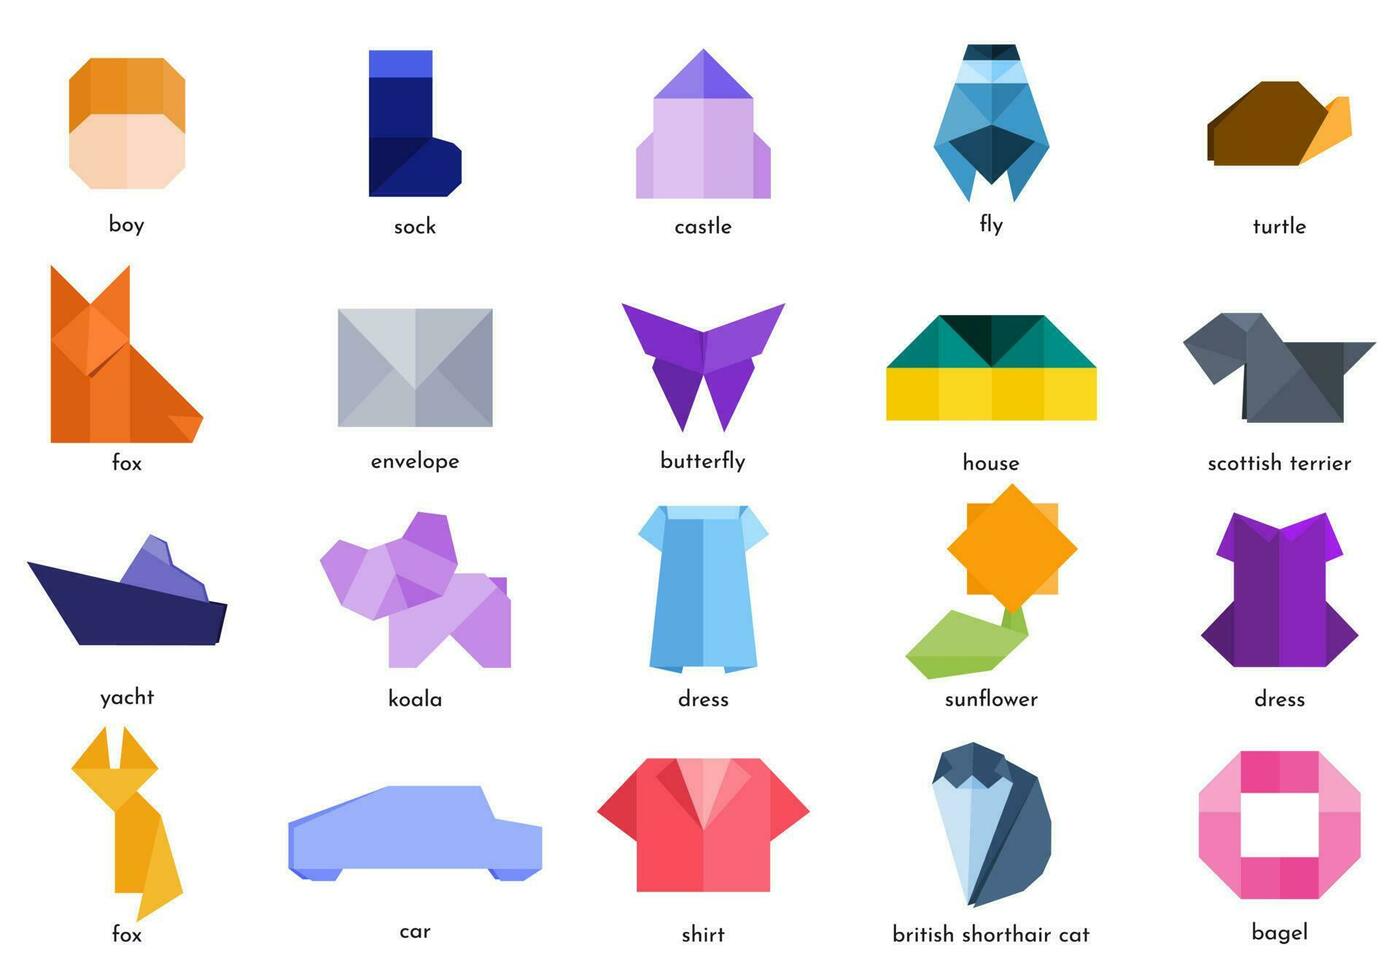 verzameling van divers origami dieren, insecten, voorwerpen met levendig kleuren. vector illustratie. geïsoleerd origami pictogrammen.